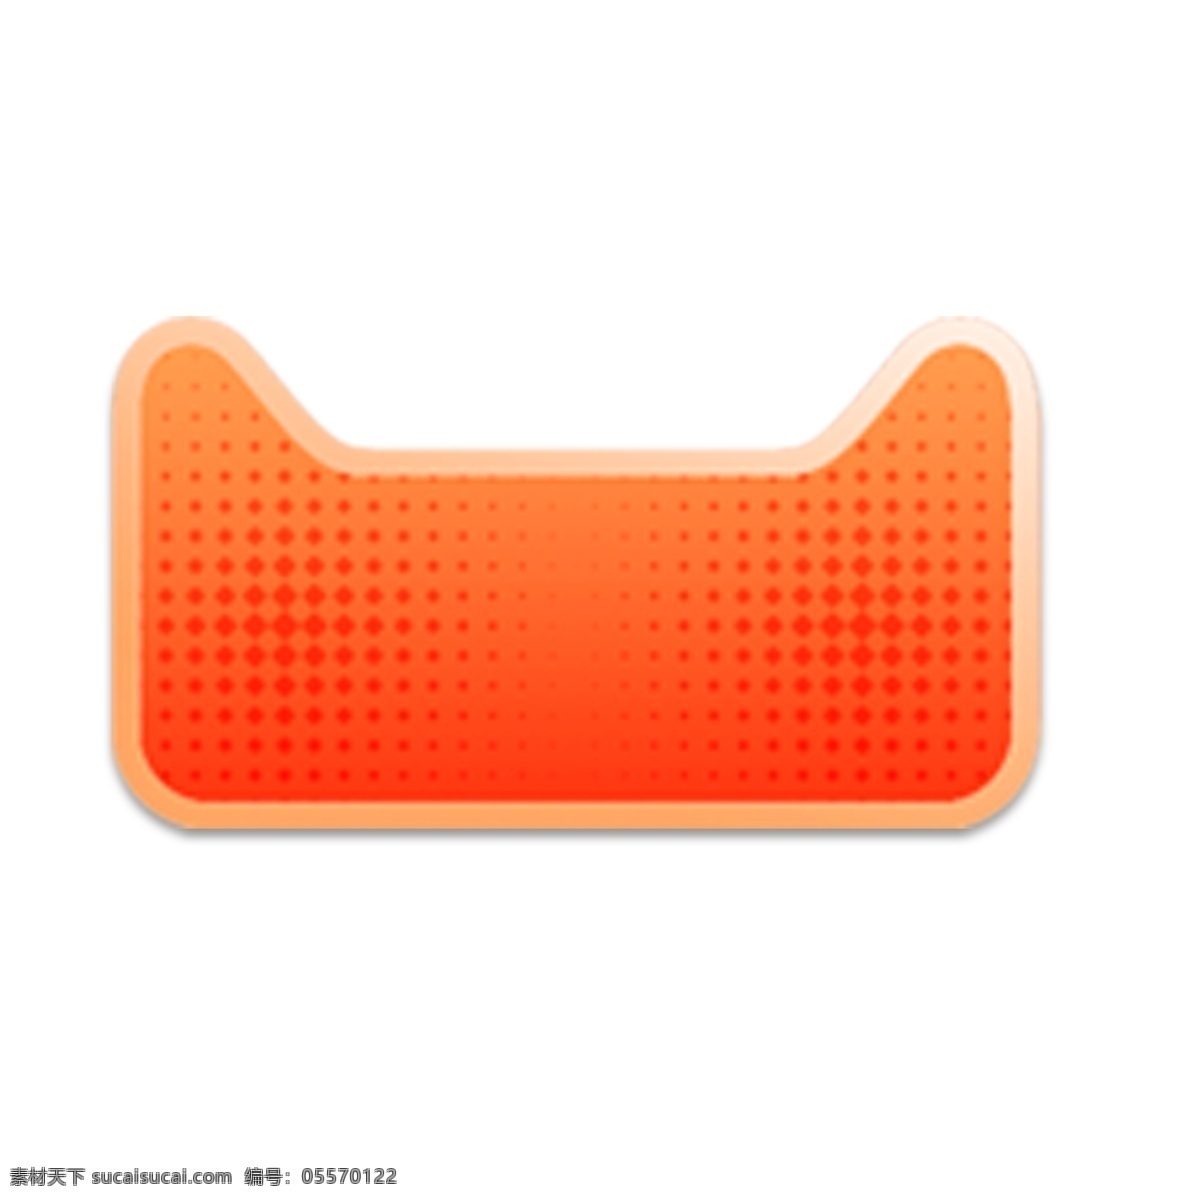 橙色 创意 圆弧 天猫 头像 元素 光泽 装饰 电商 活动 打折 优惠